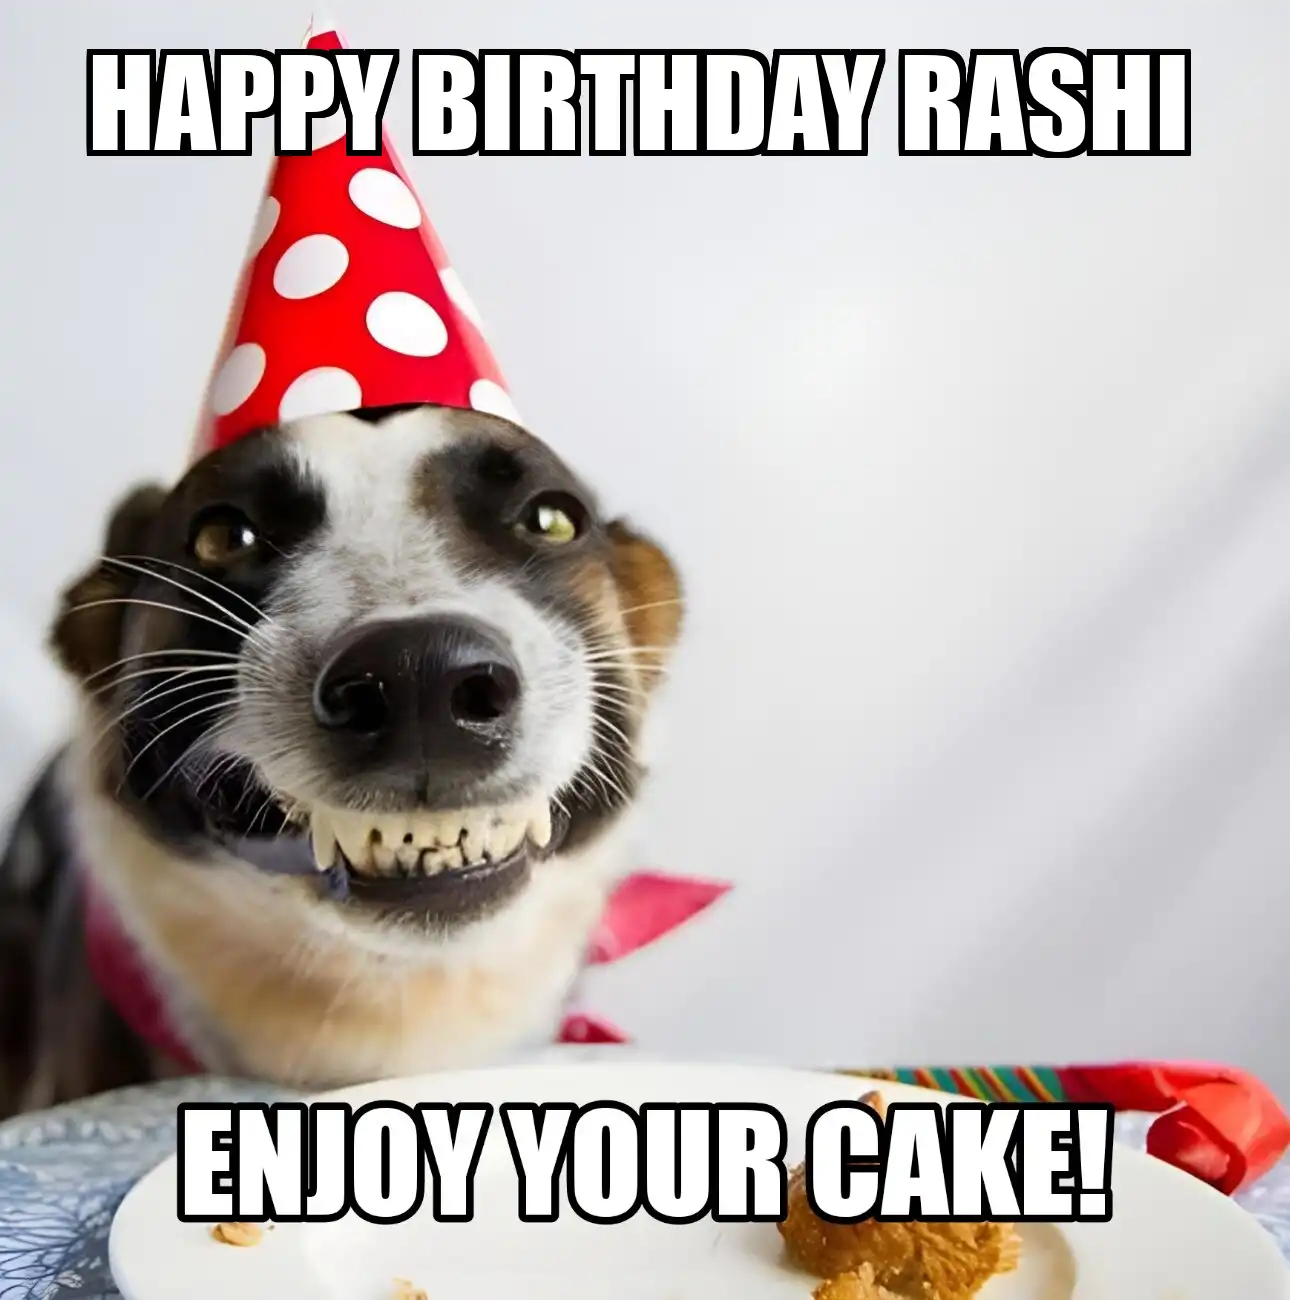 Happy Birthday Rashi Enjoy Your Cake Dog Meme